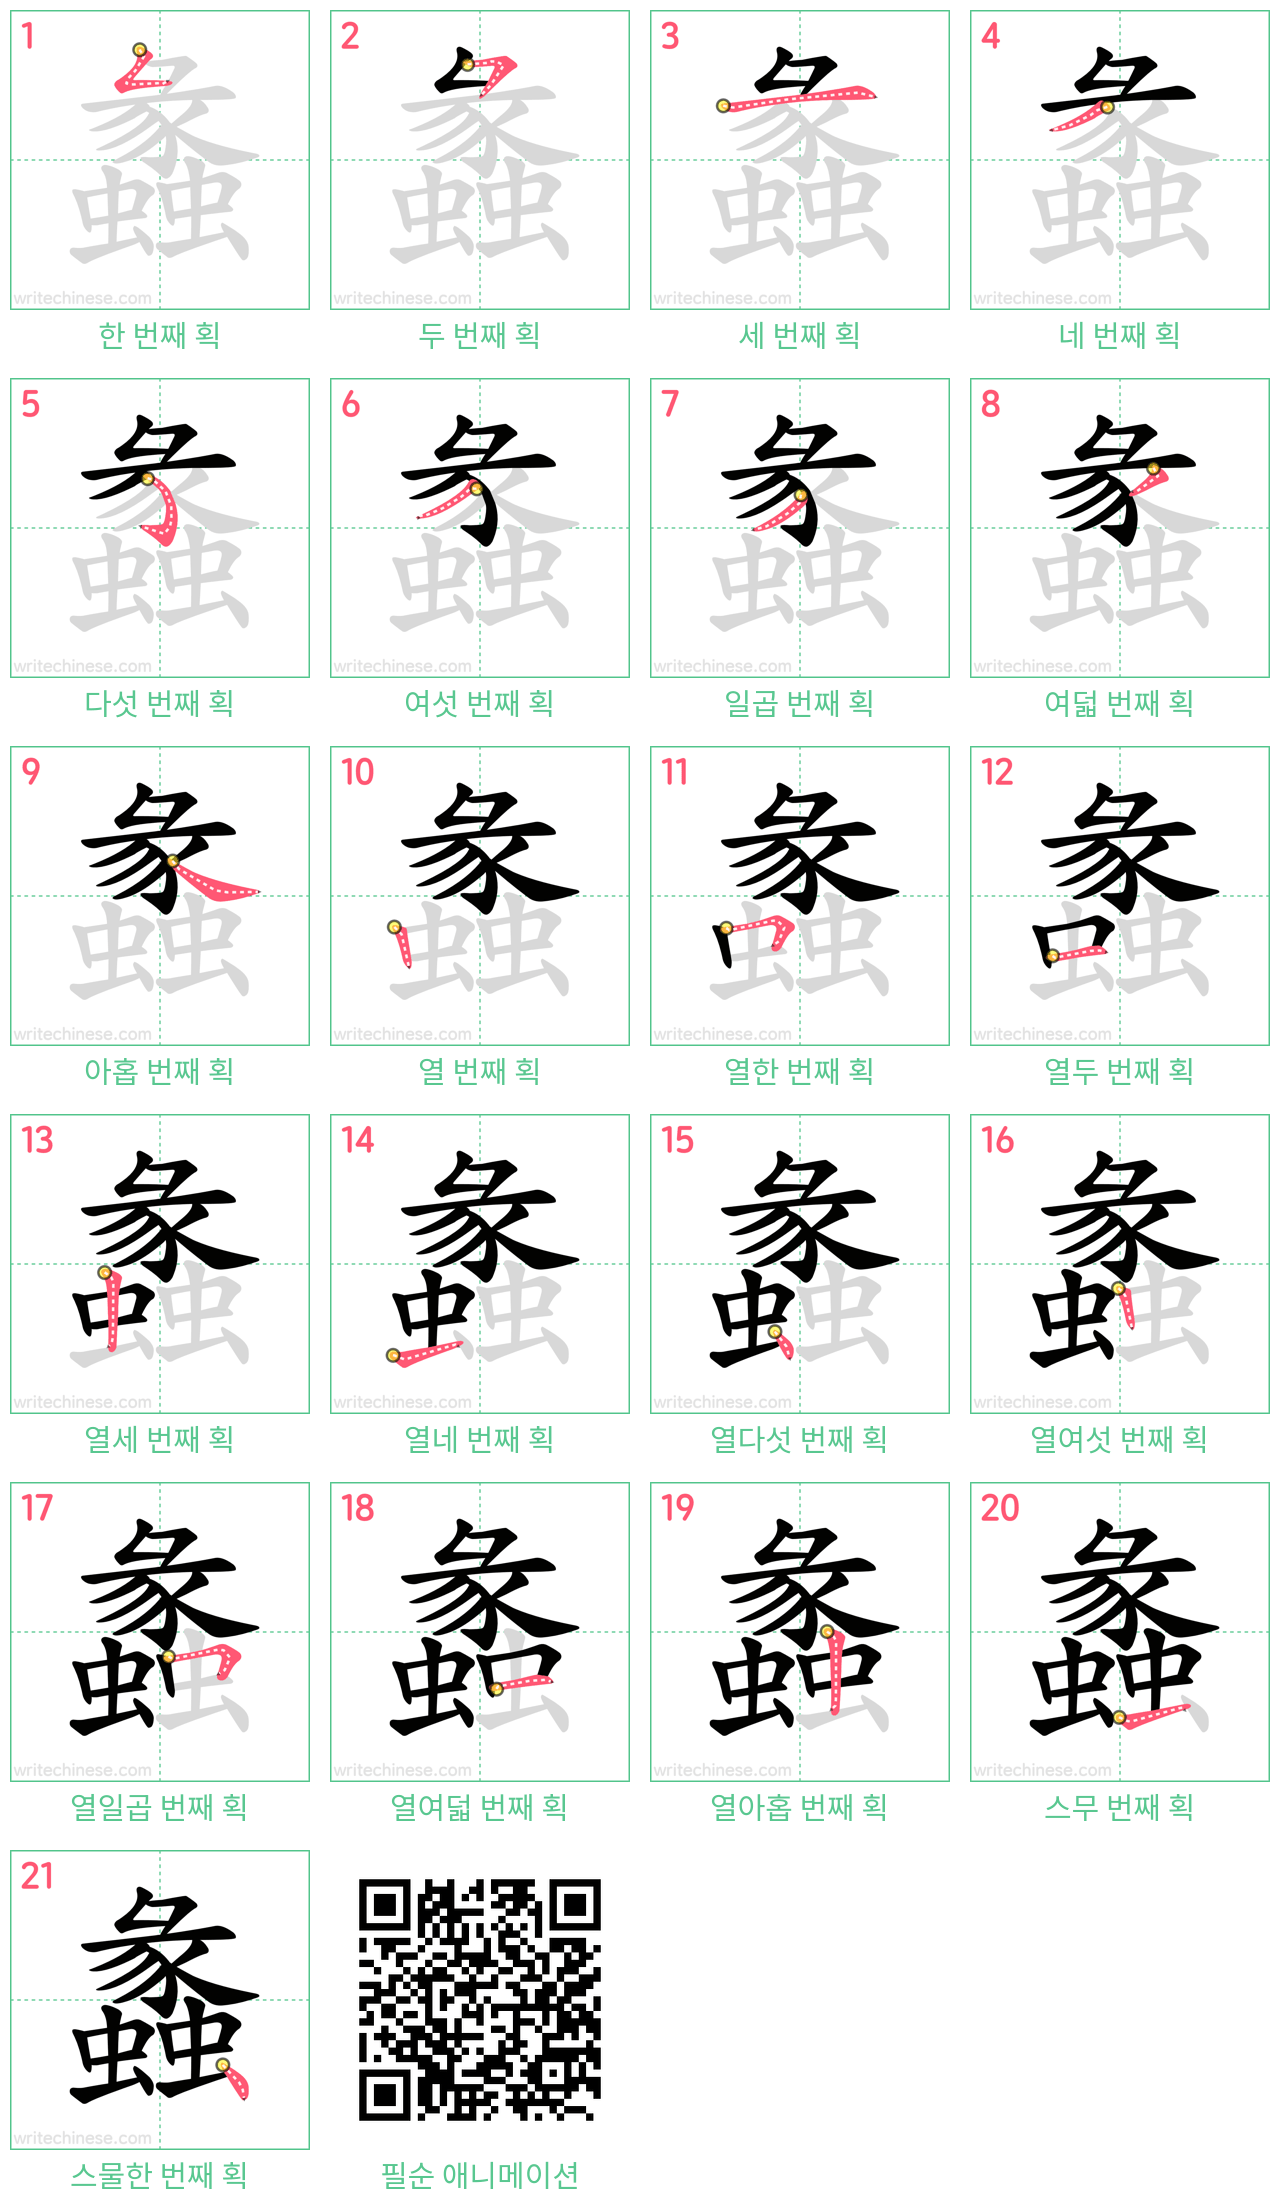 蠡 step-by-step stroke order diagrams